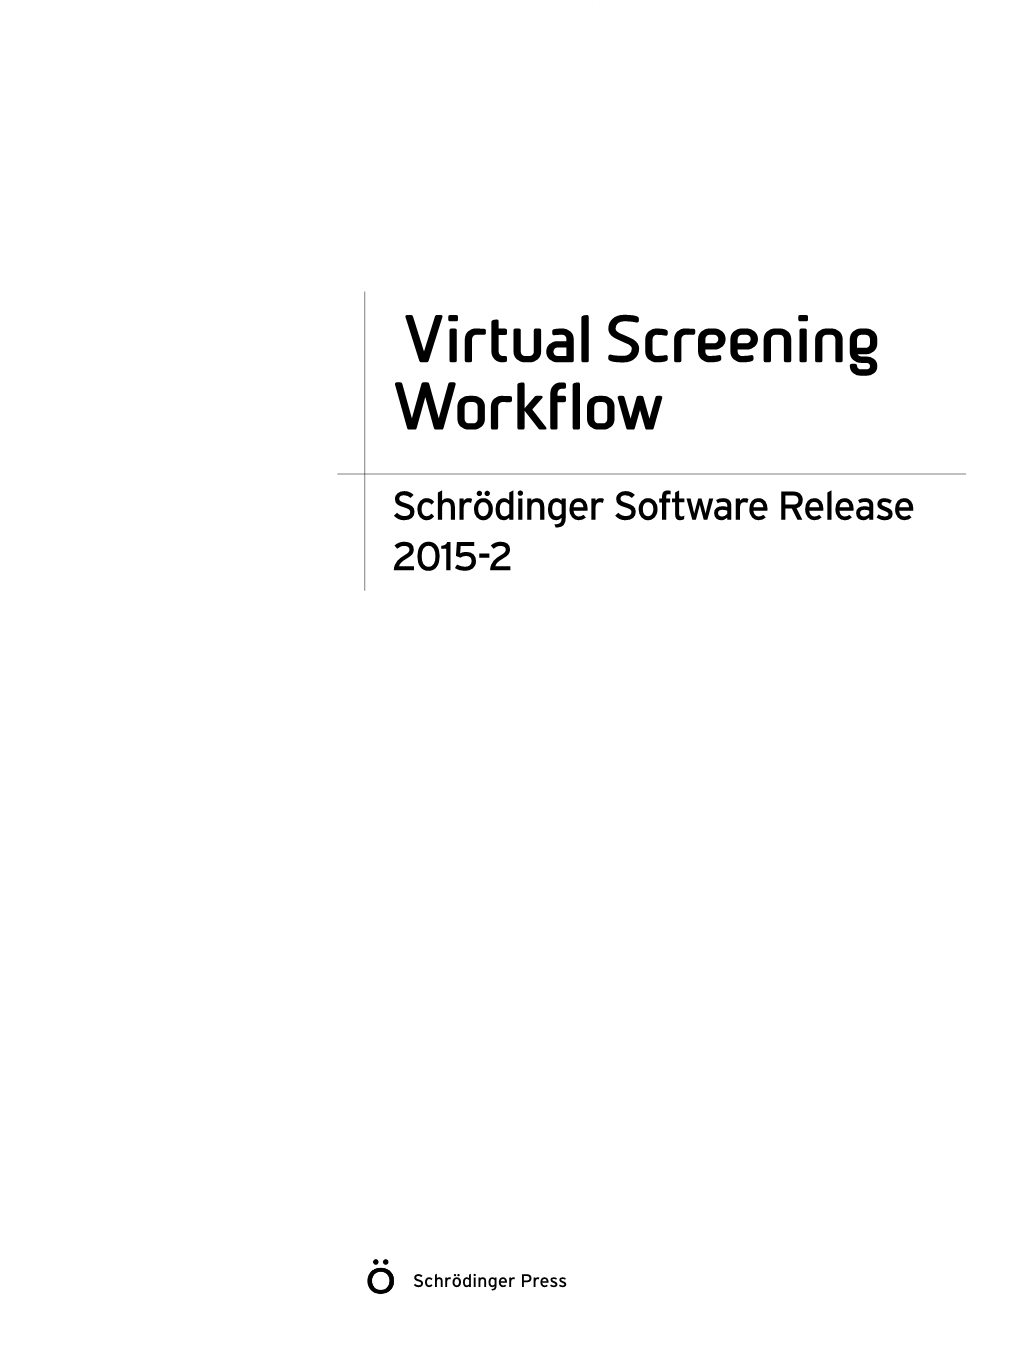 Virtual Screening Workflow